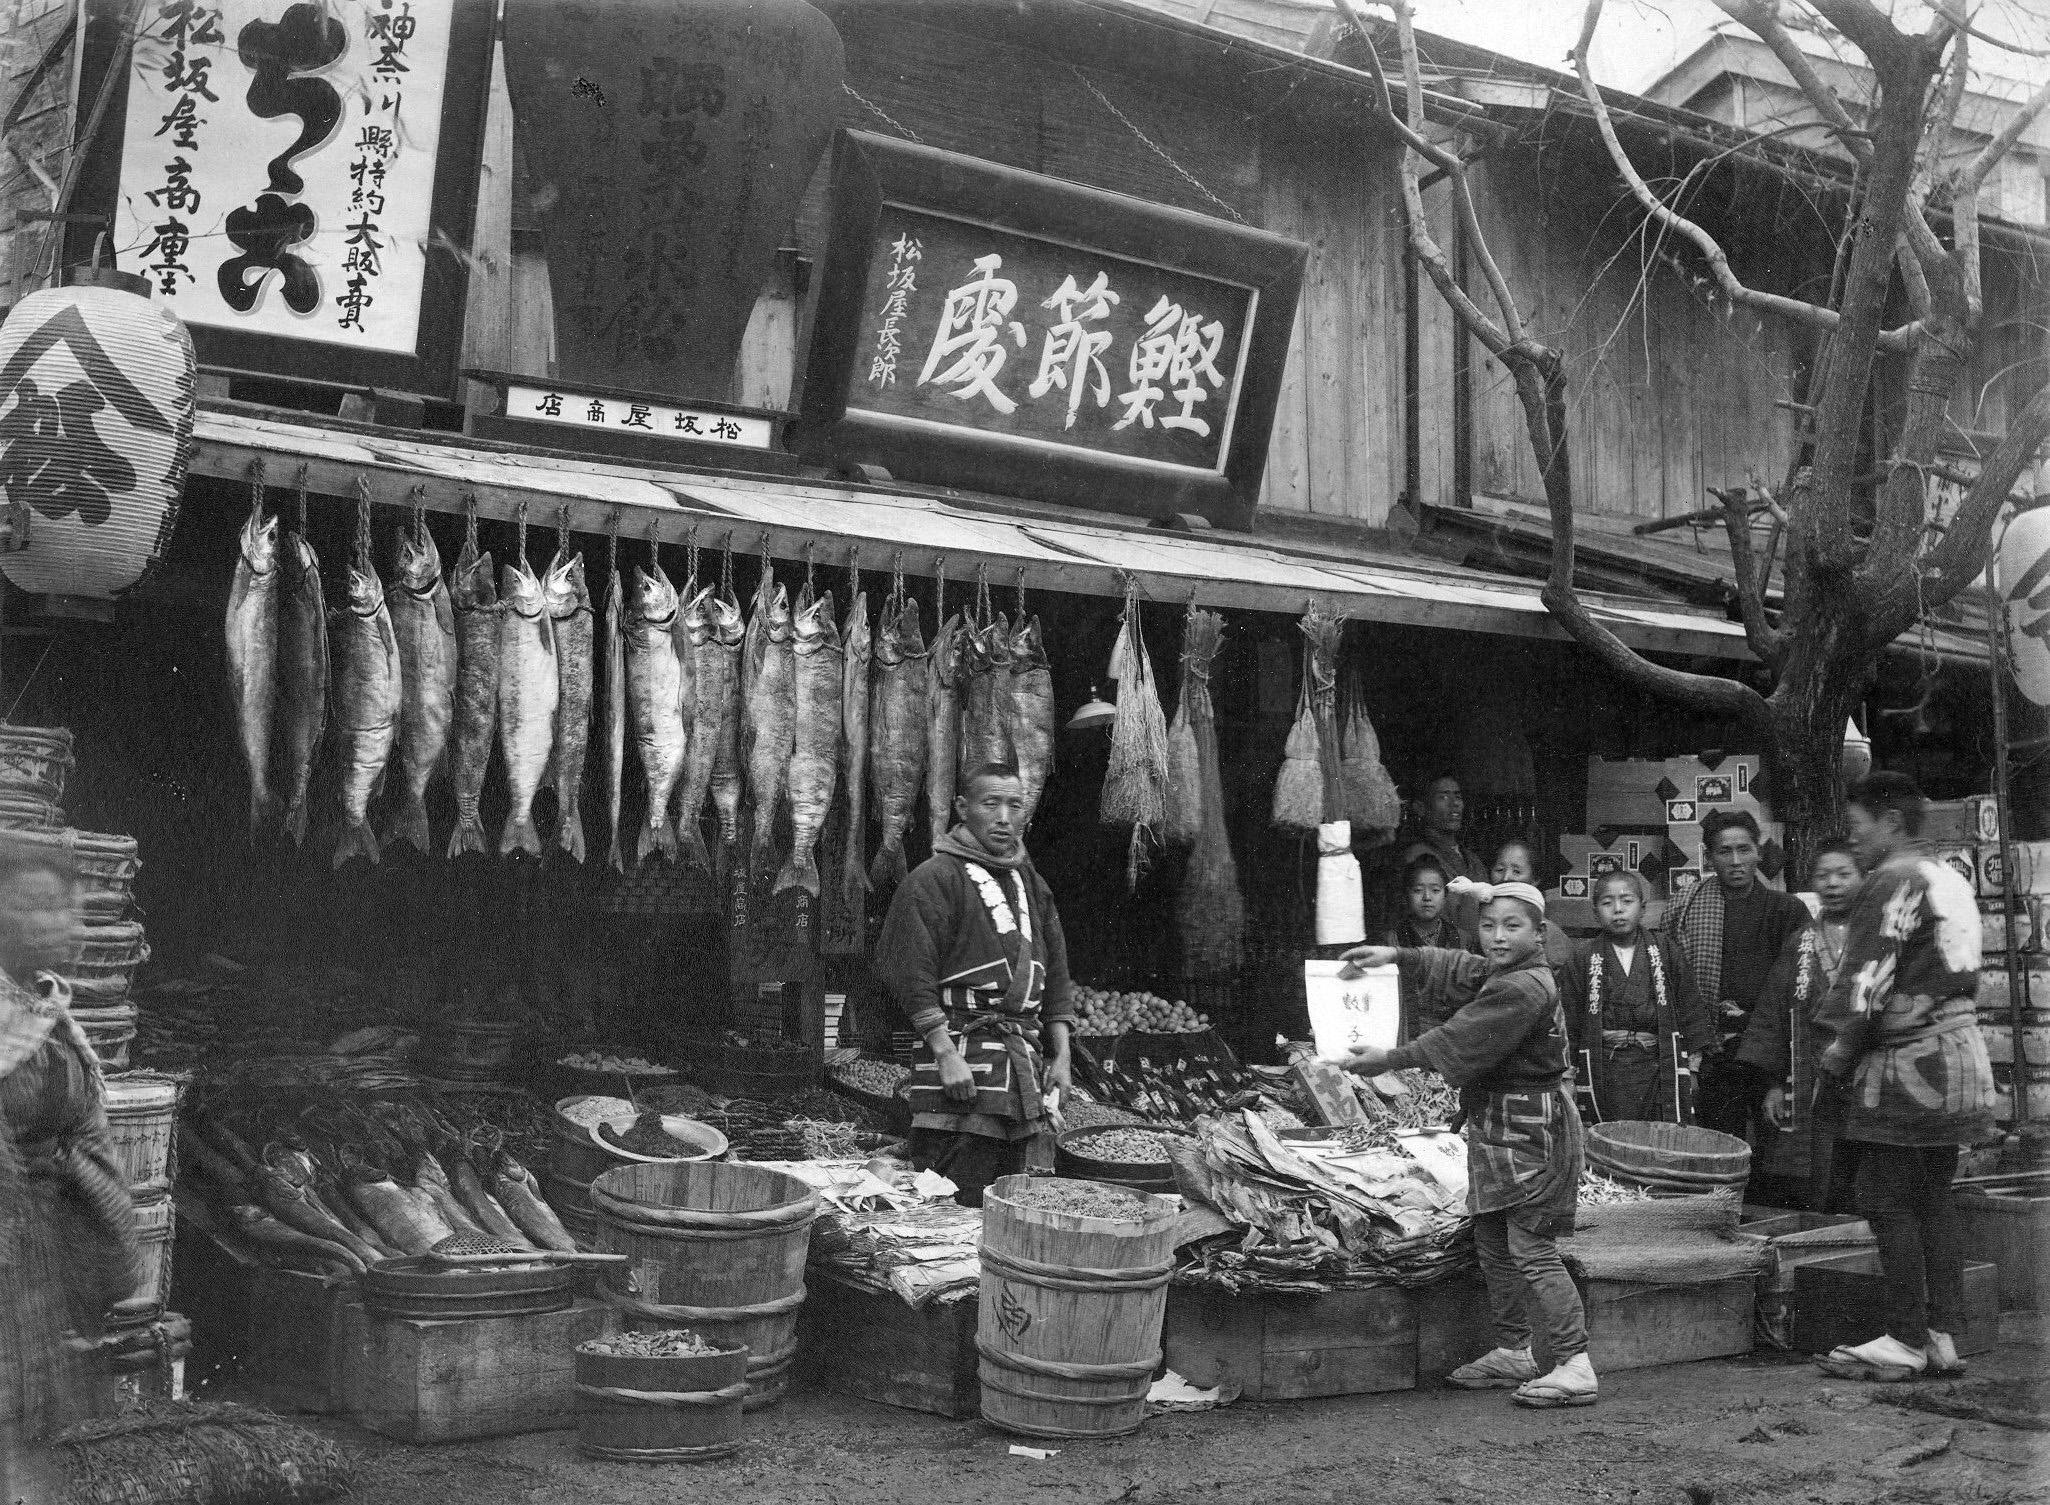 Fishmonger's store in Yokohama, Japan, around 1880 [2050x1505].jpg